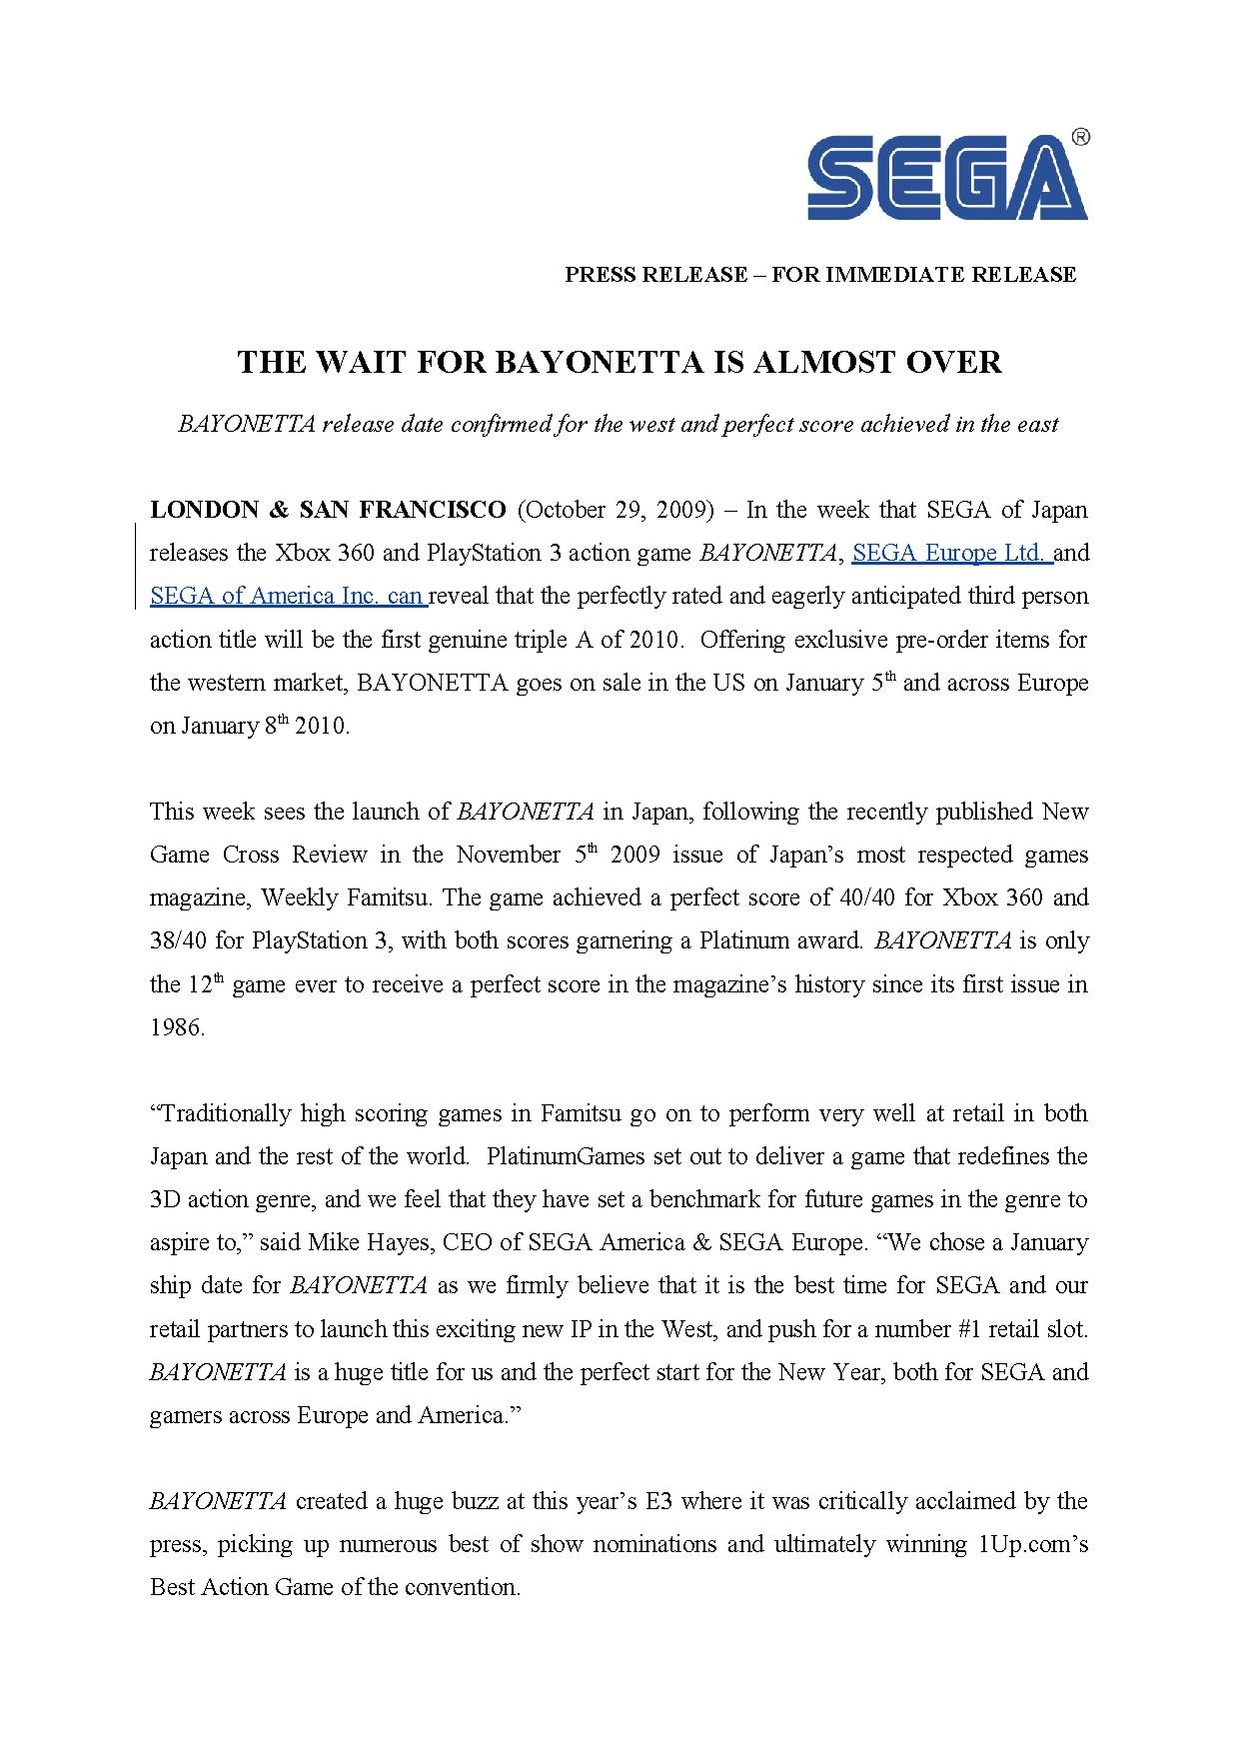 Bayonetta shipping PR.pdf